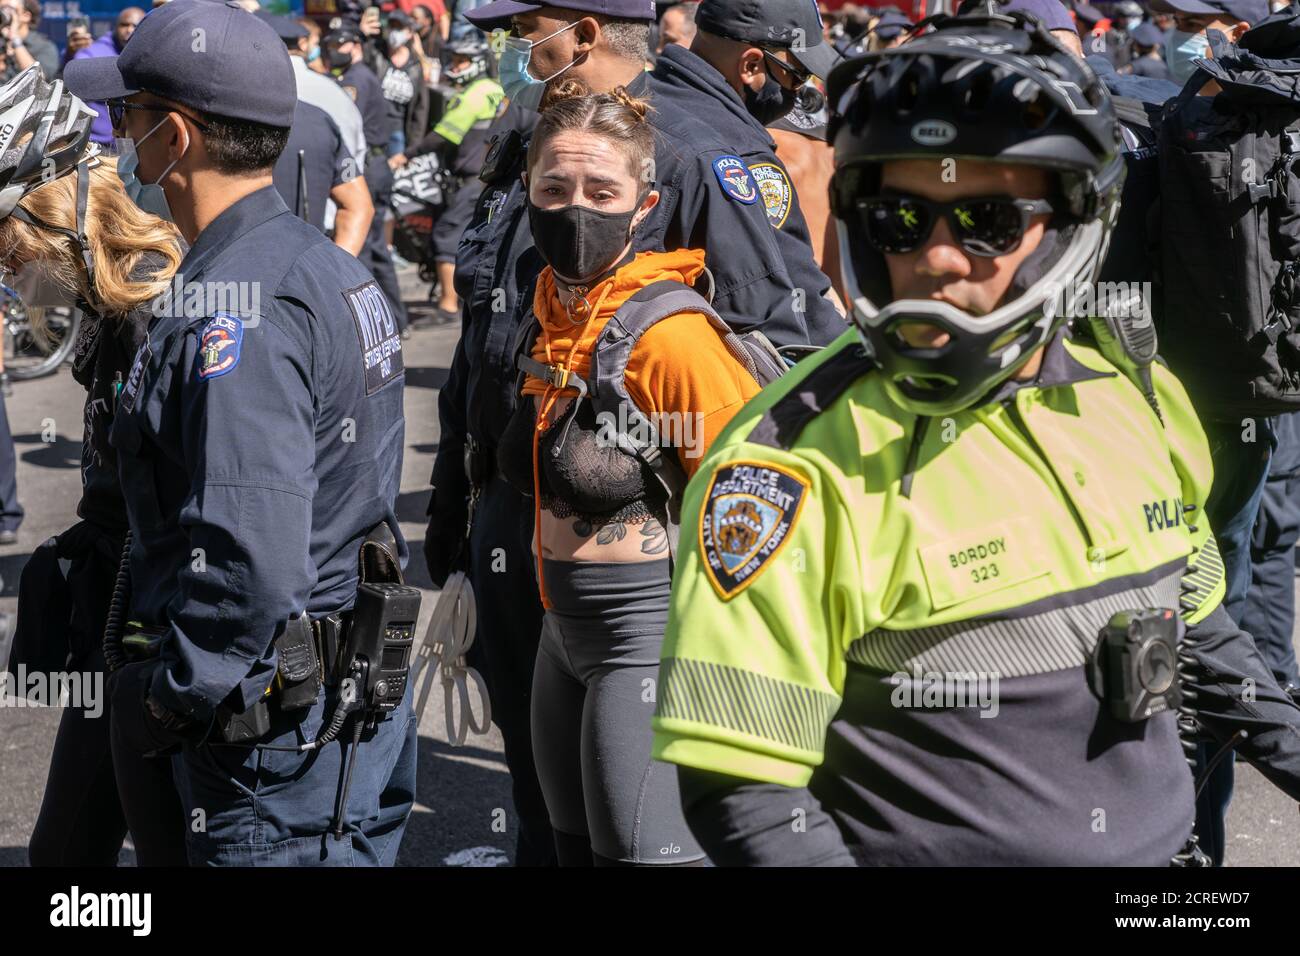 NUEVA YORK, NY - 19 DE SEPTIEMBRE de 2020: La policía arresta a 86 personas en una protesta contra la Agencia de Inmigración y Aduanas (ICE) en Times Square. Foto de stock